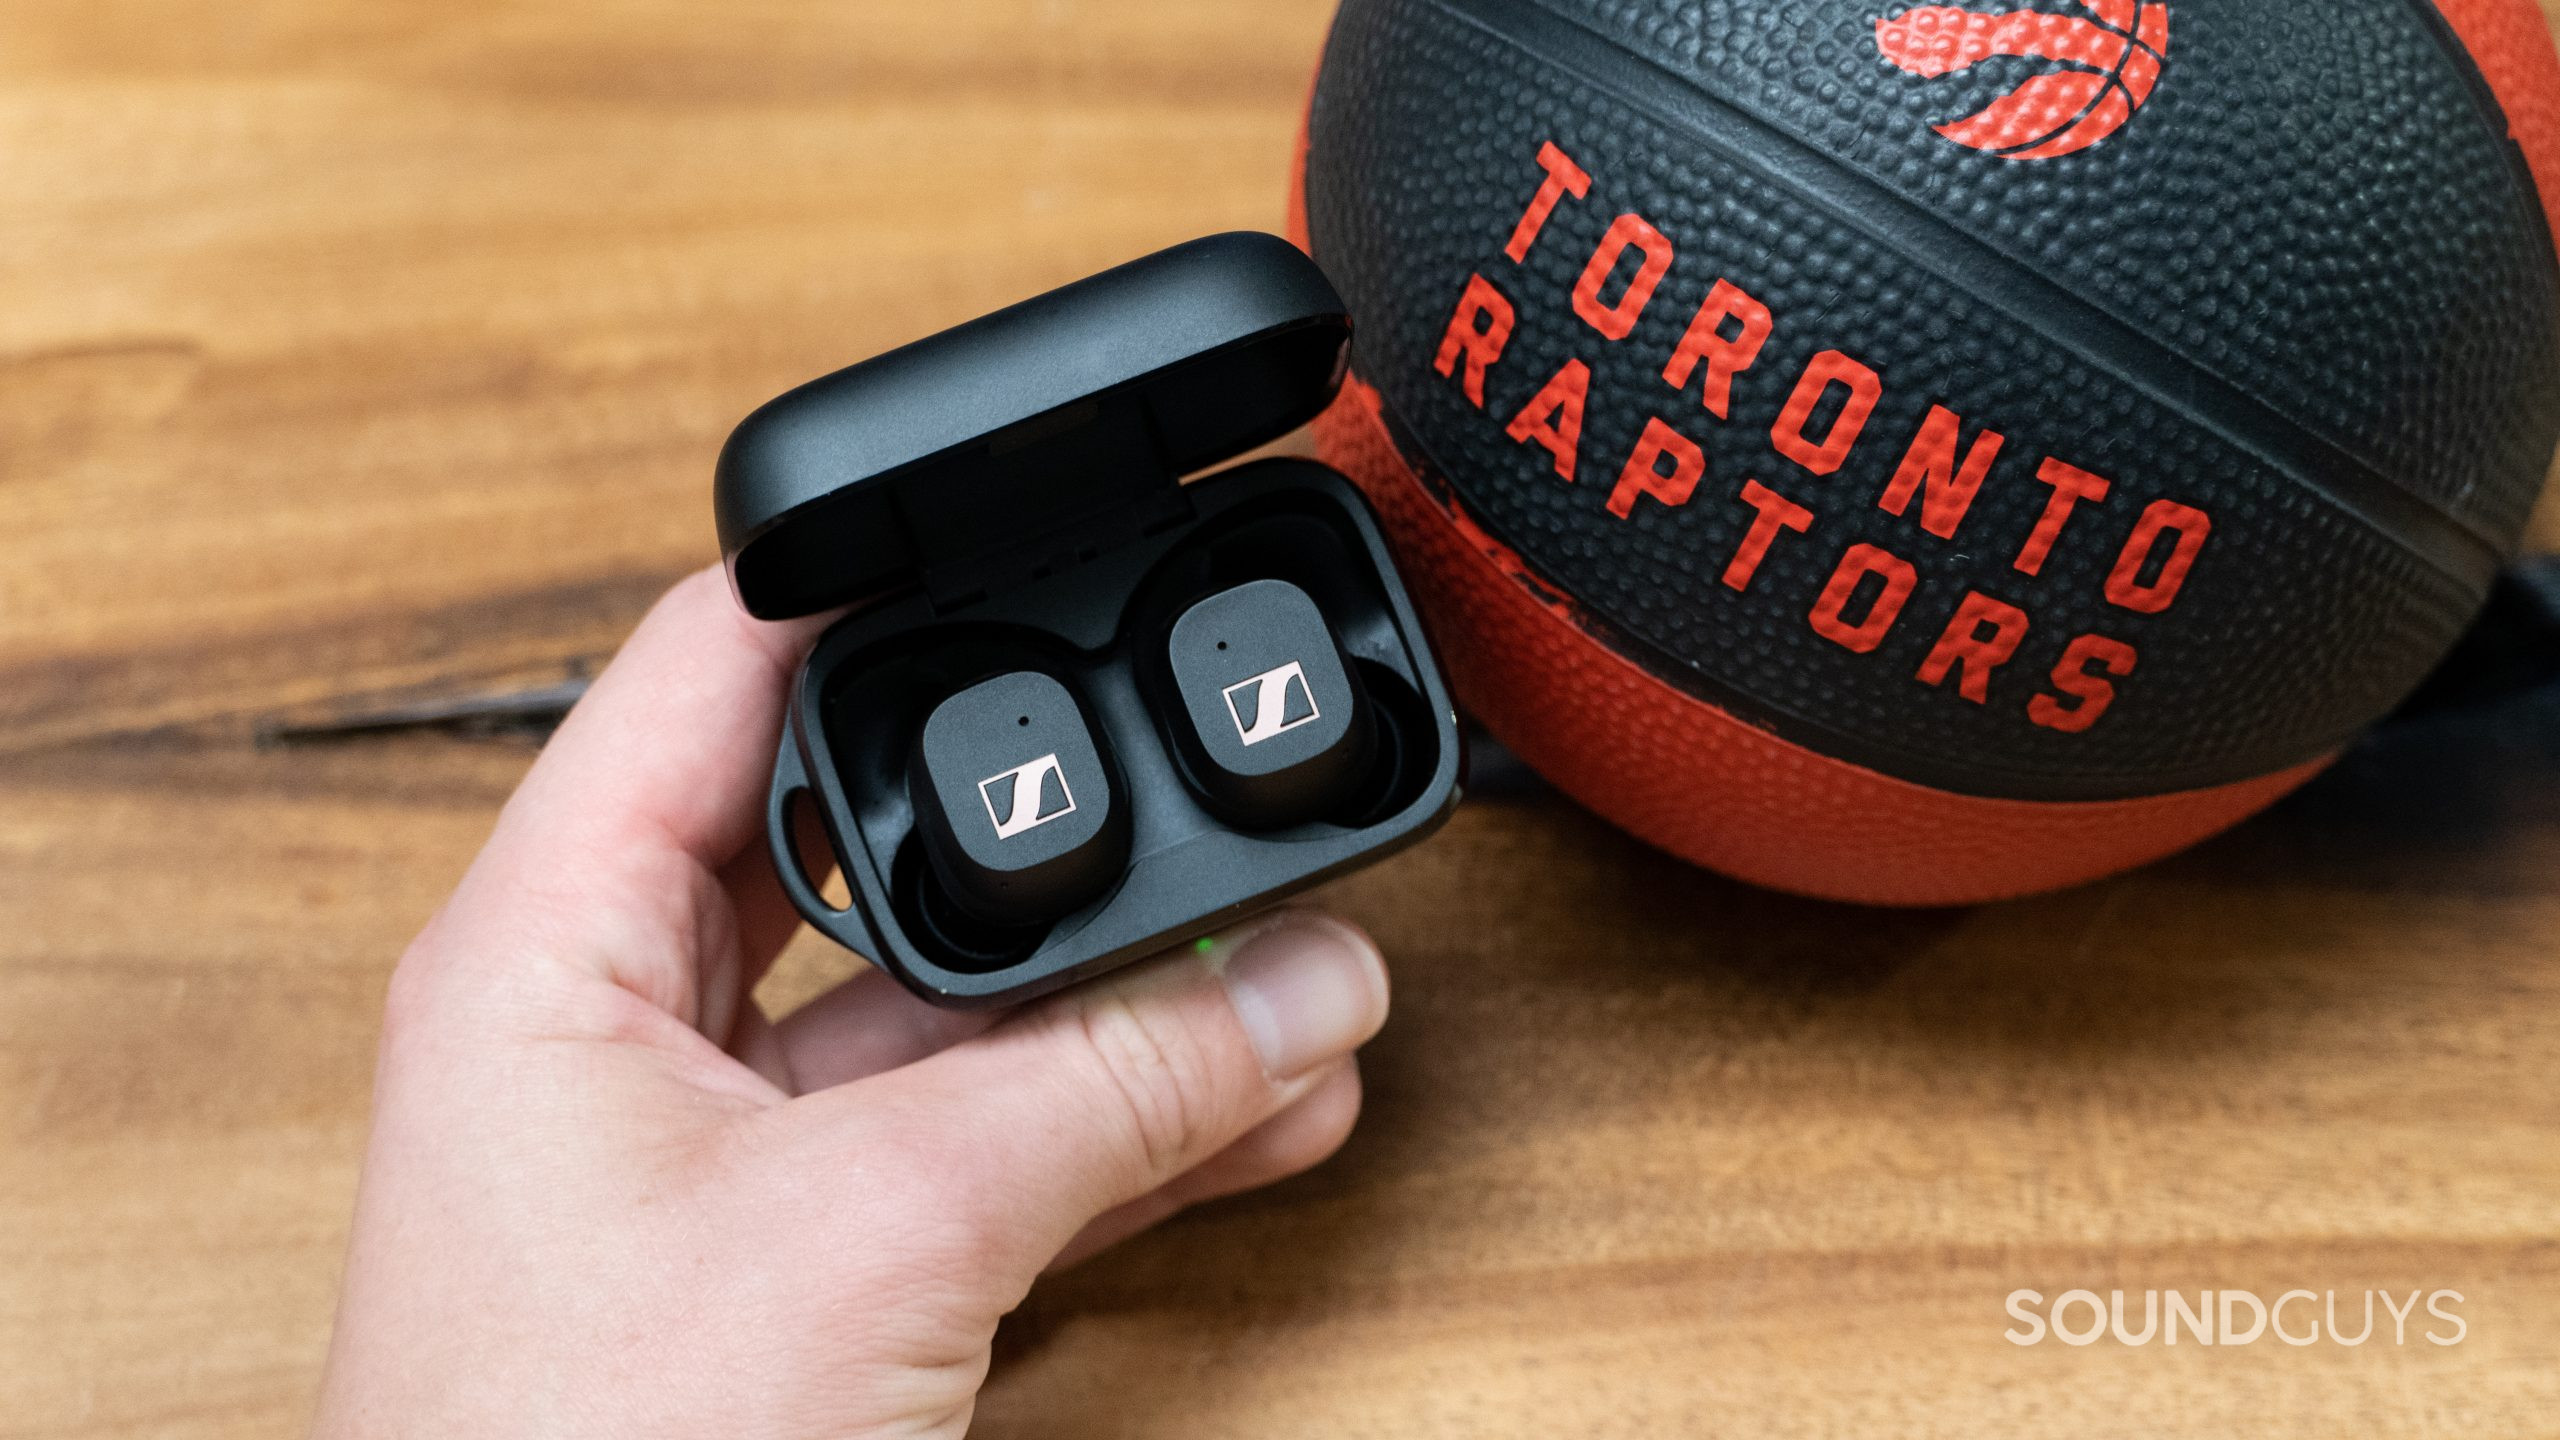 Sennheiser Sport True Wireless earbuds next to a basketball